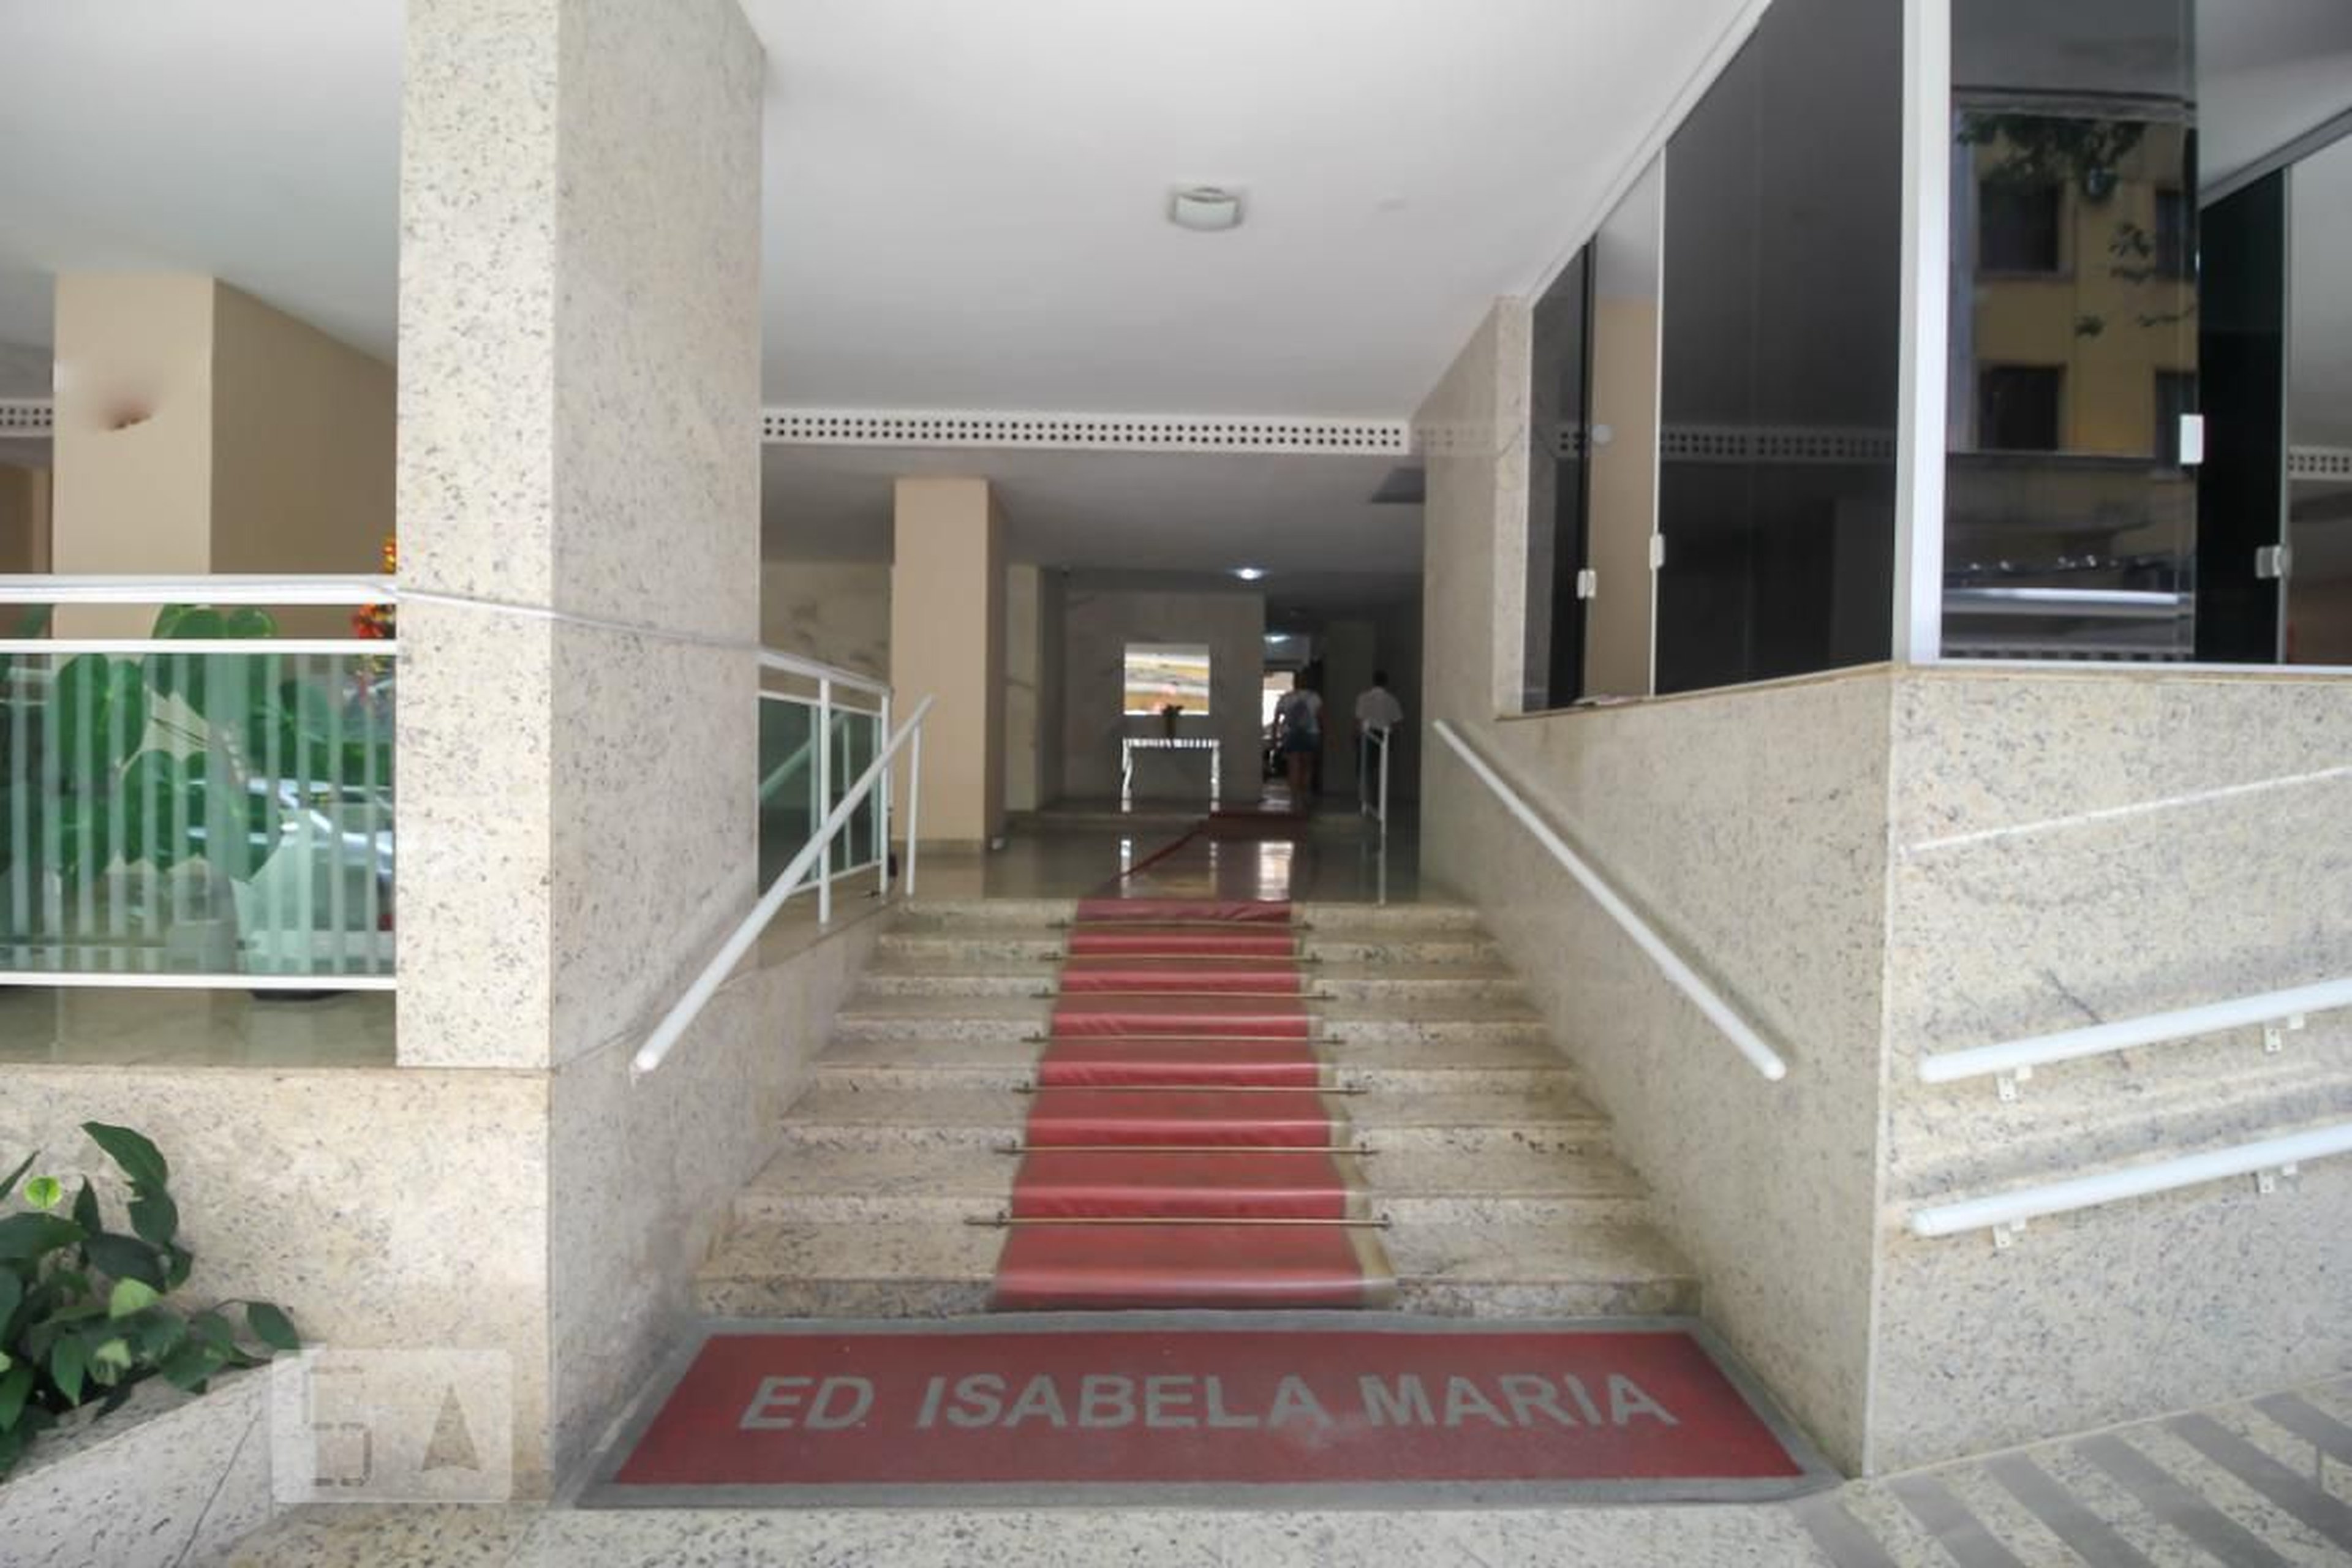 Entrada do Prédio - Edifício Isabela Maria